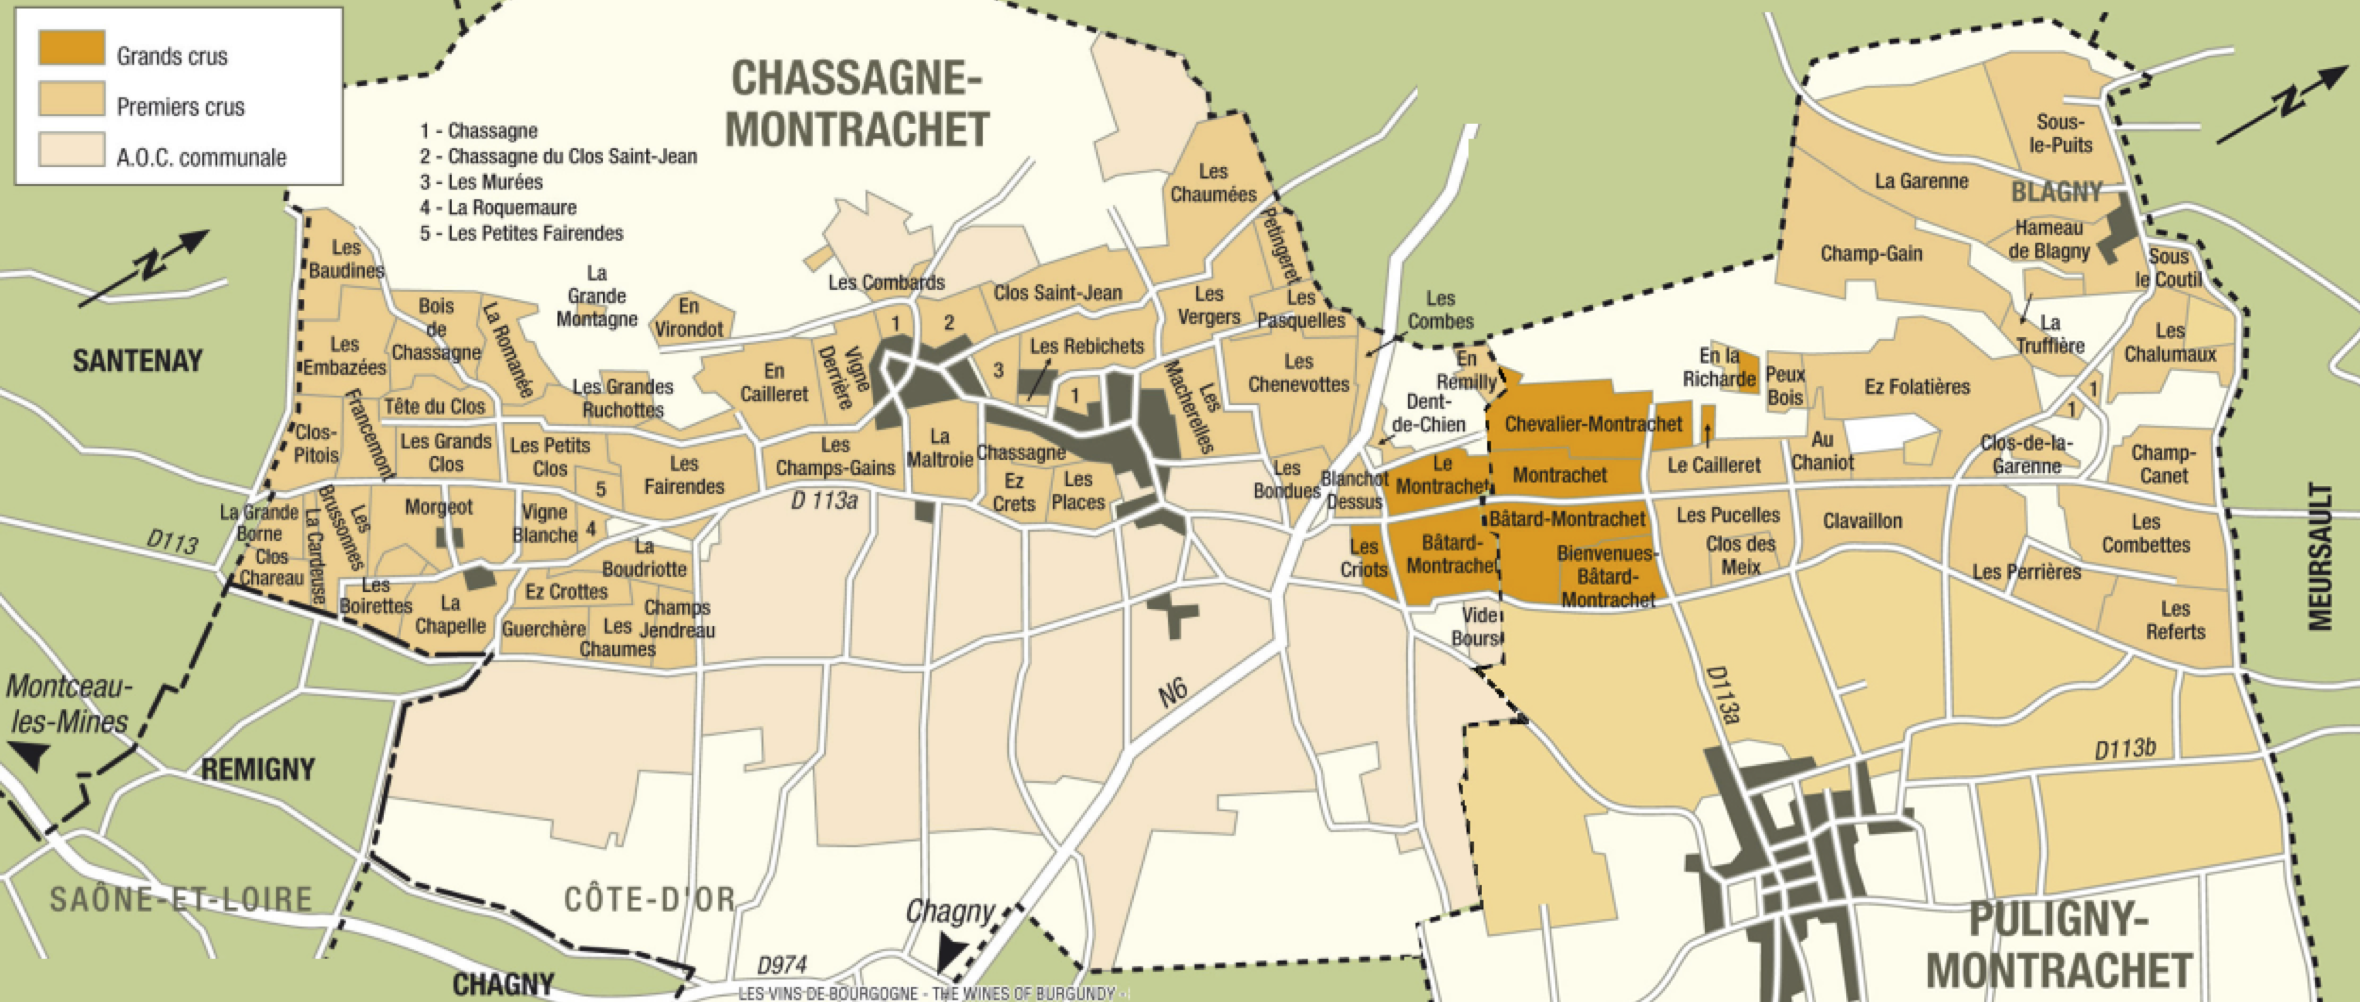 Chablis Grand Crus - Mappa